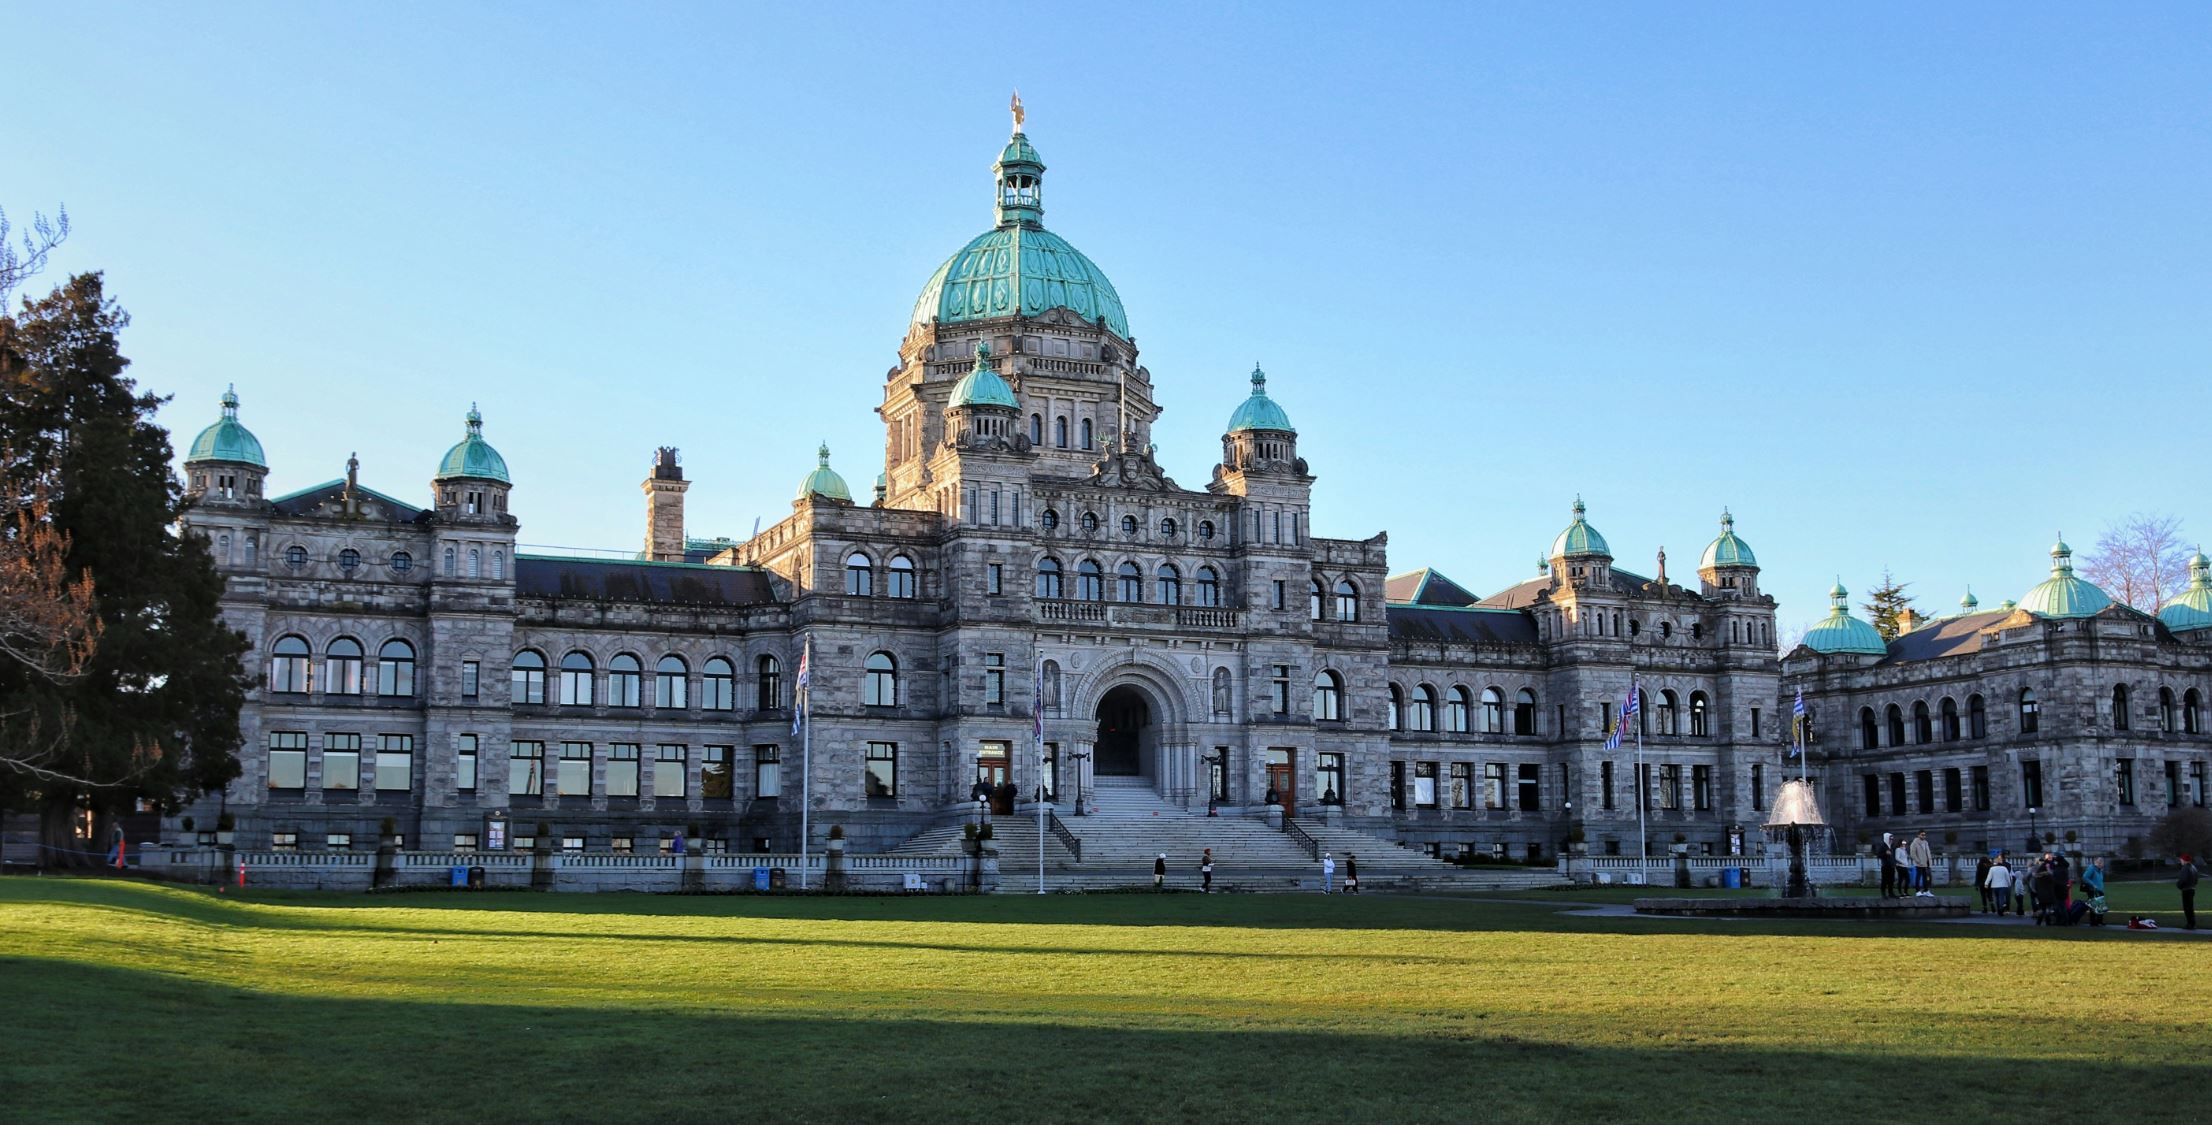 BC Legislative Buildings in Victoria, government